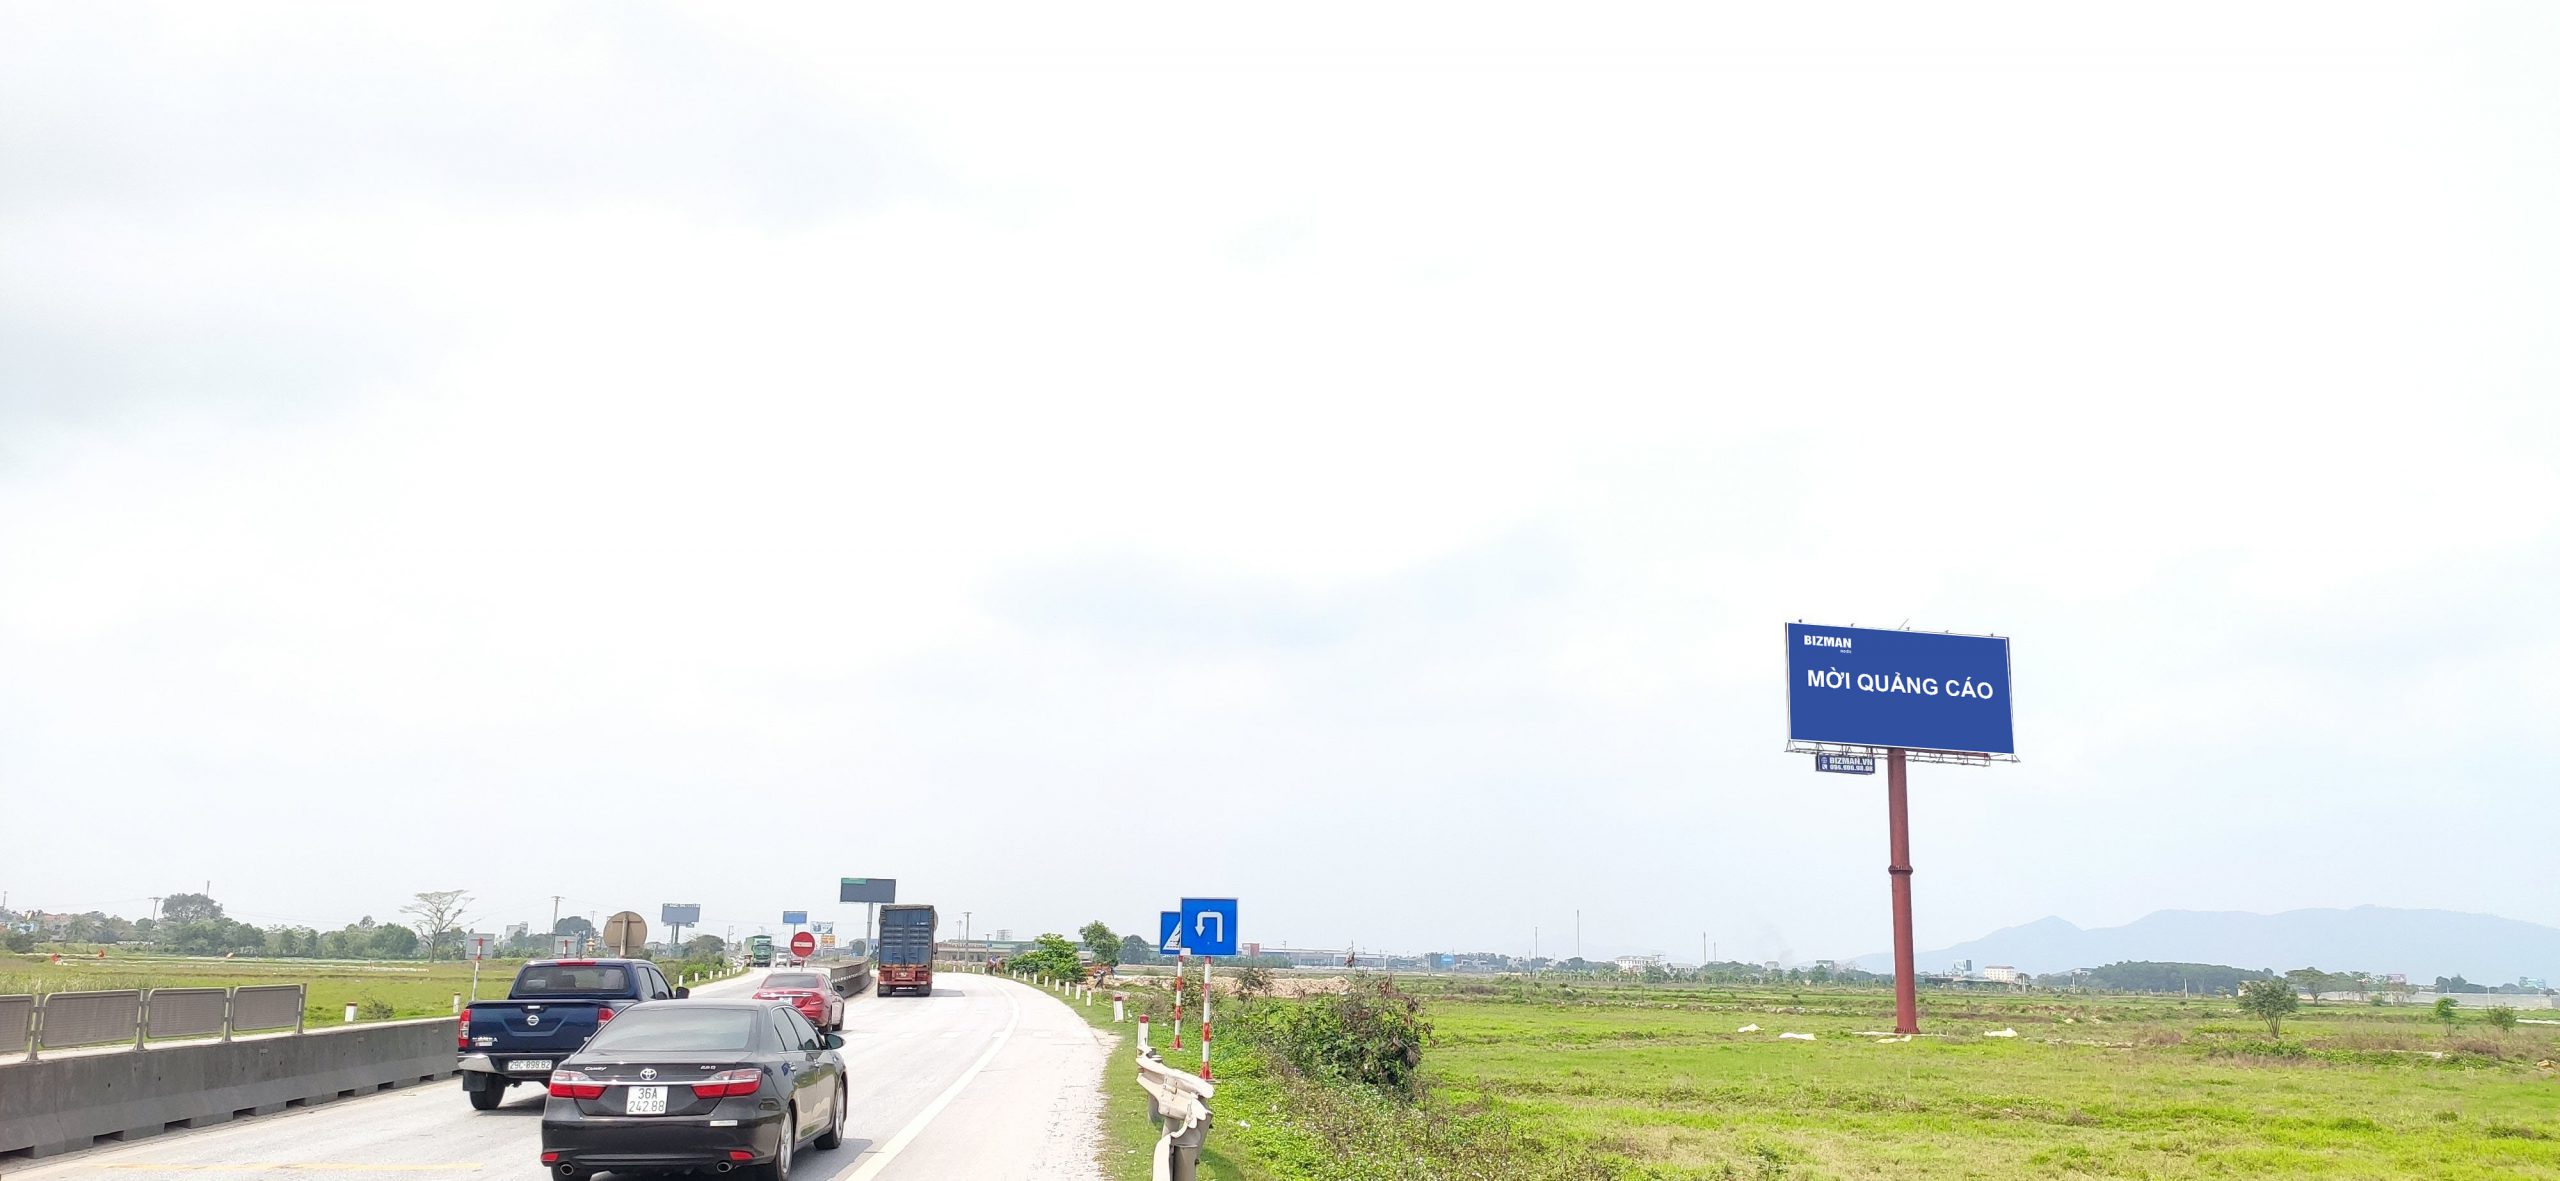 Bảng quảng cáo quốc lộ 1A – Hà Nội - Thanh Hóa – 317+500